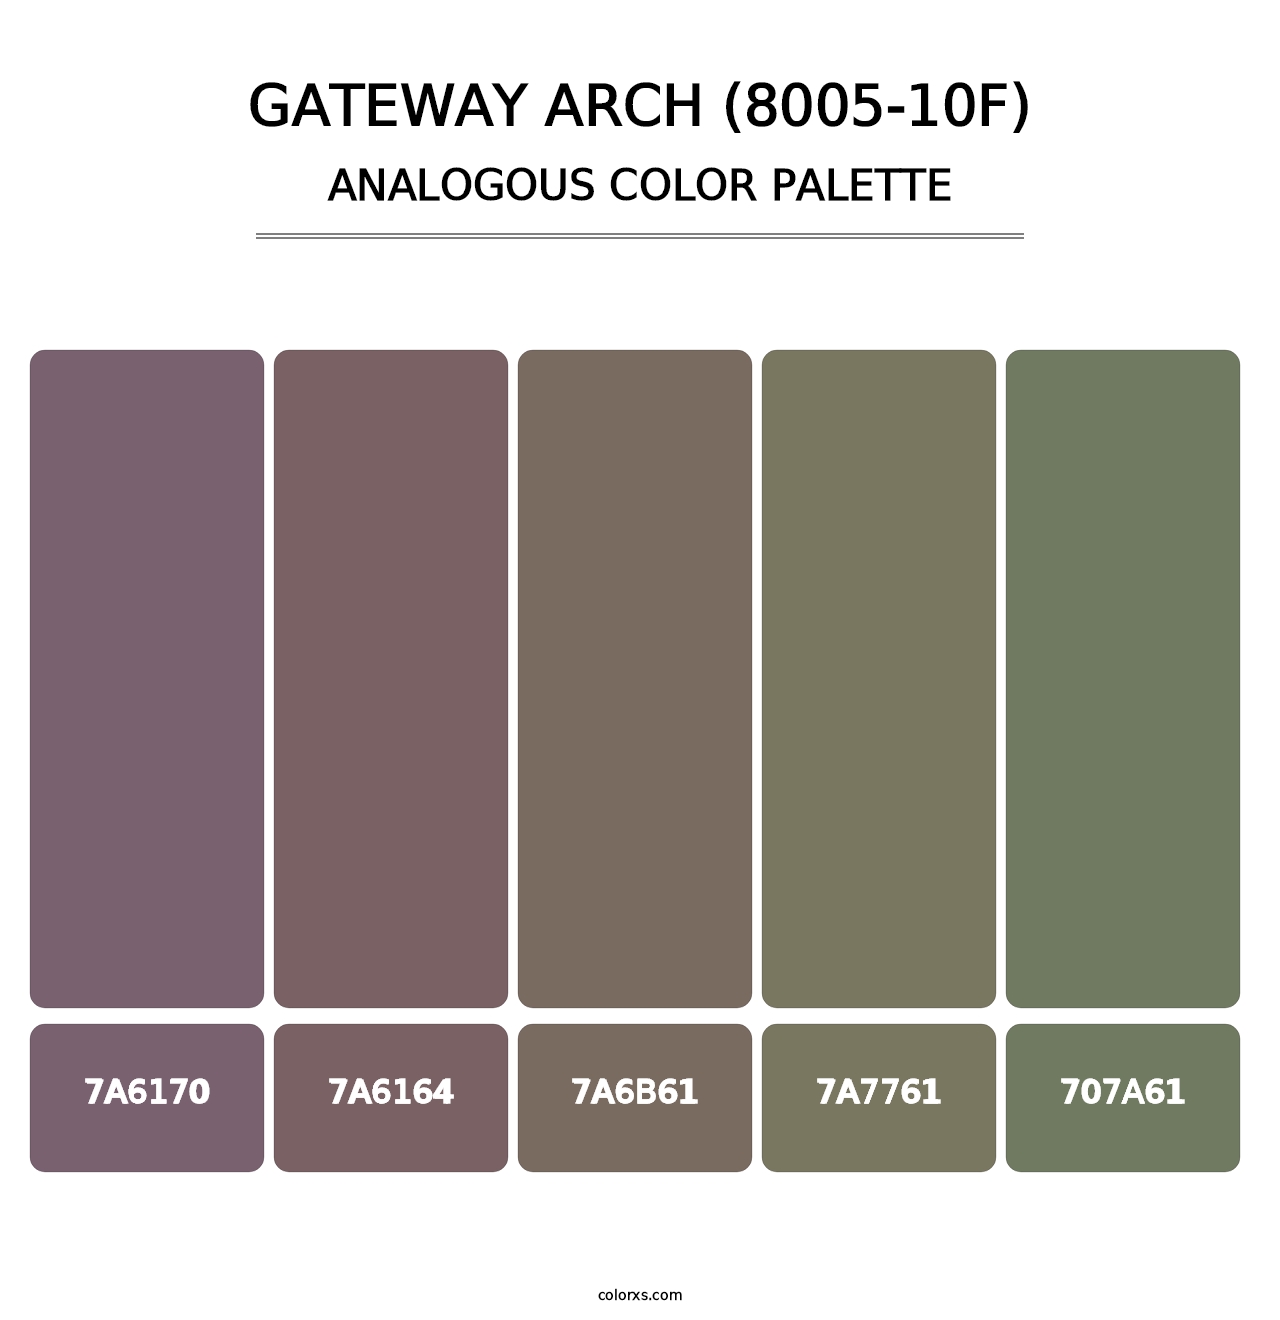 Gateway Arch (8005-10F) - Analogous Color Palette